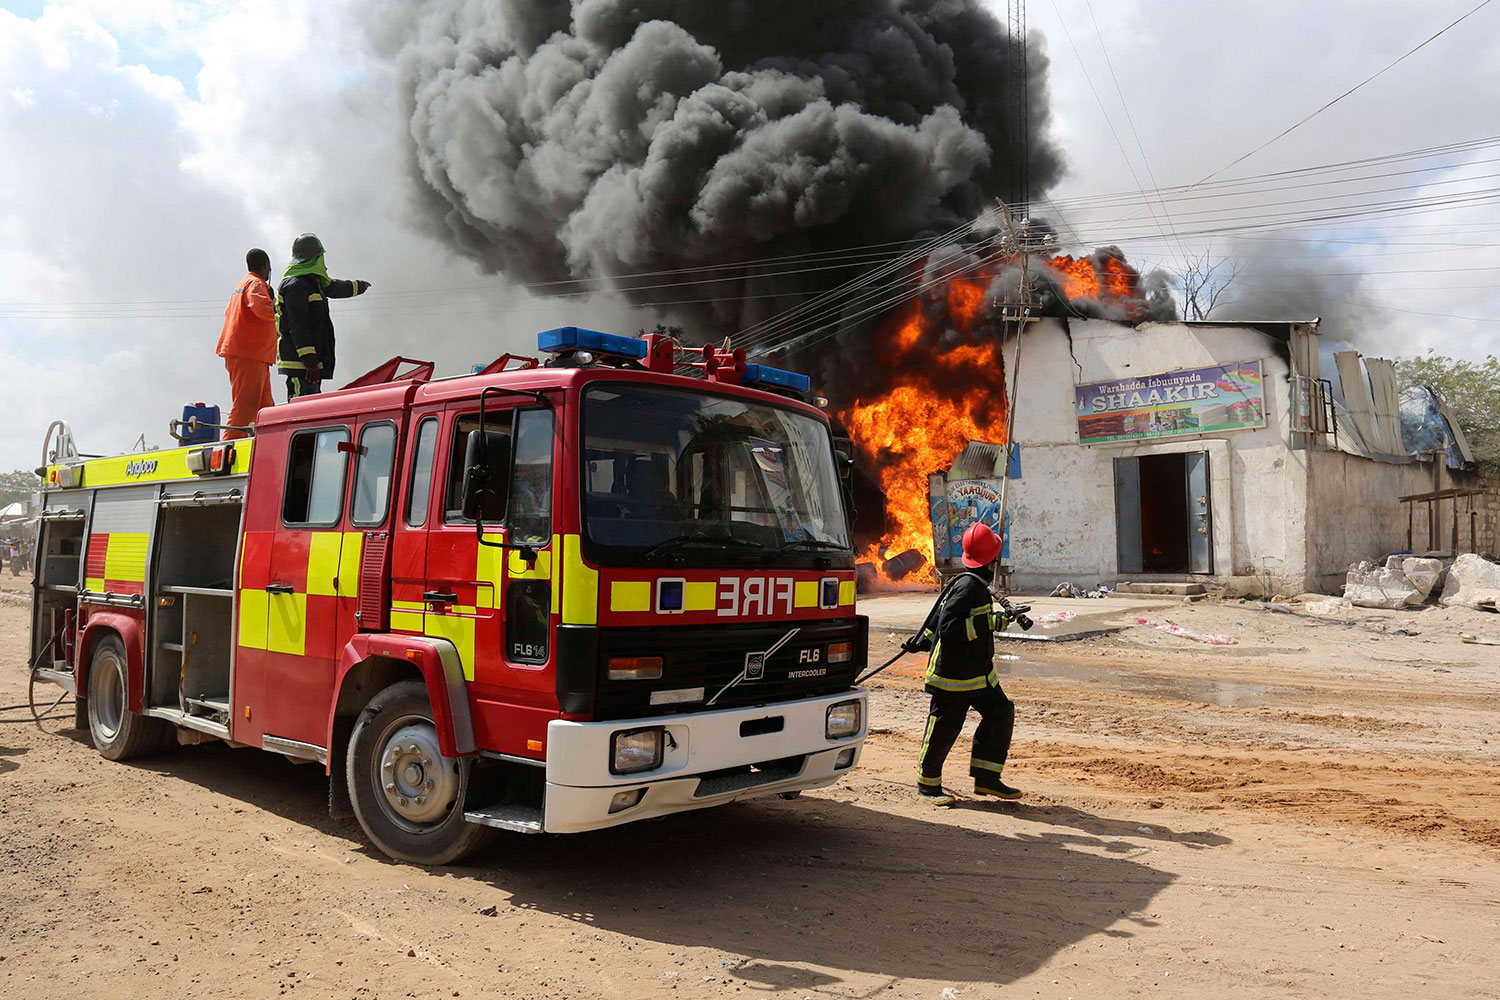 El incendio en una gasolinera de Hodan obliga a evacuar las tiendas aledañas